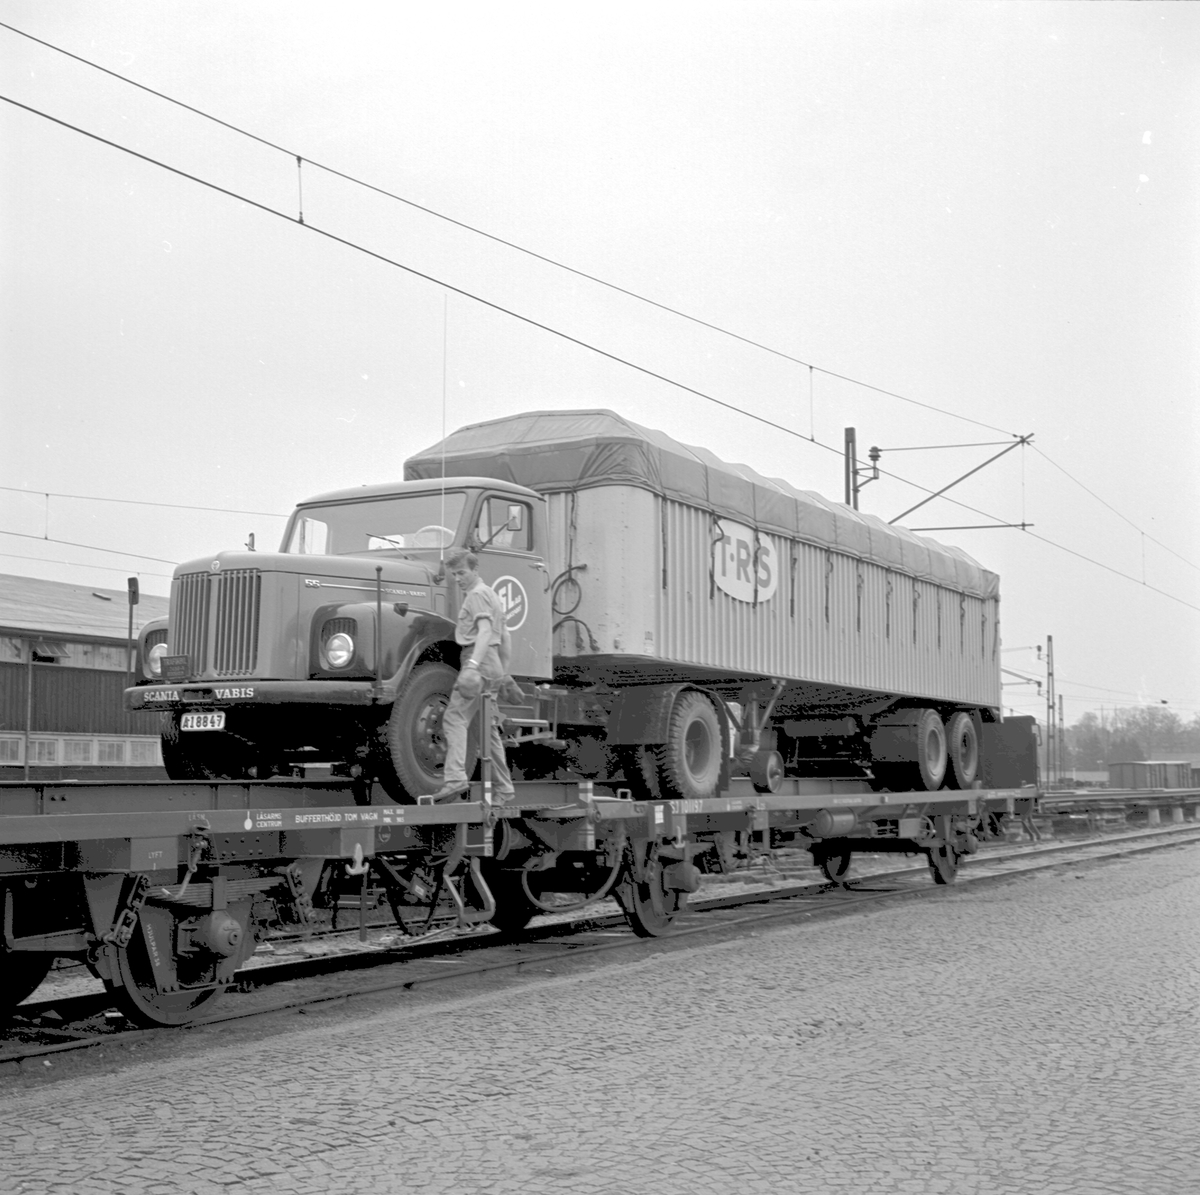 Piggy-Backtransport. Scania Vabis. T.R.S. SJ Lqs 101197